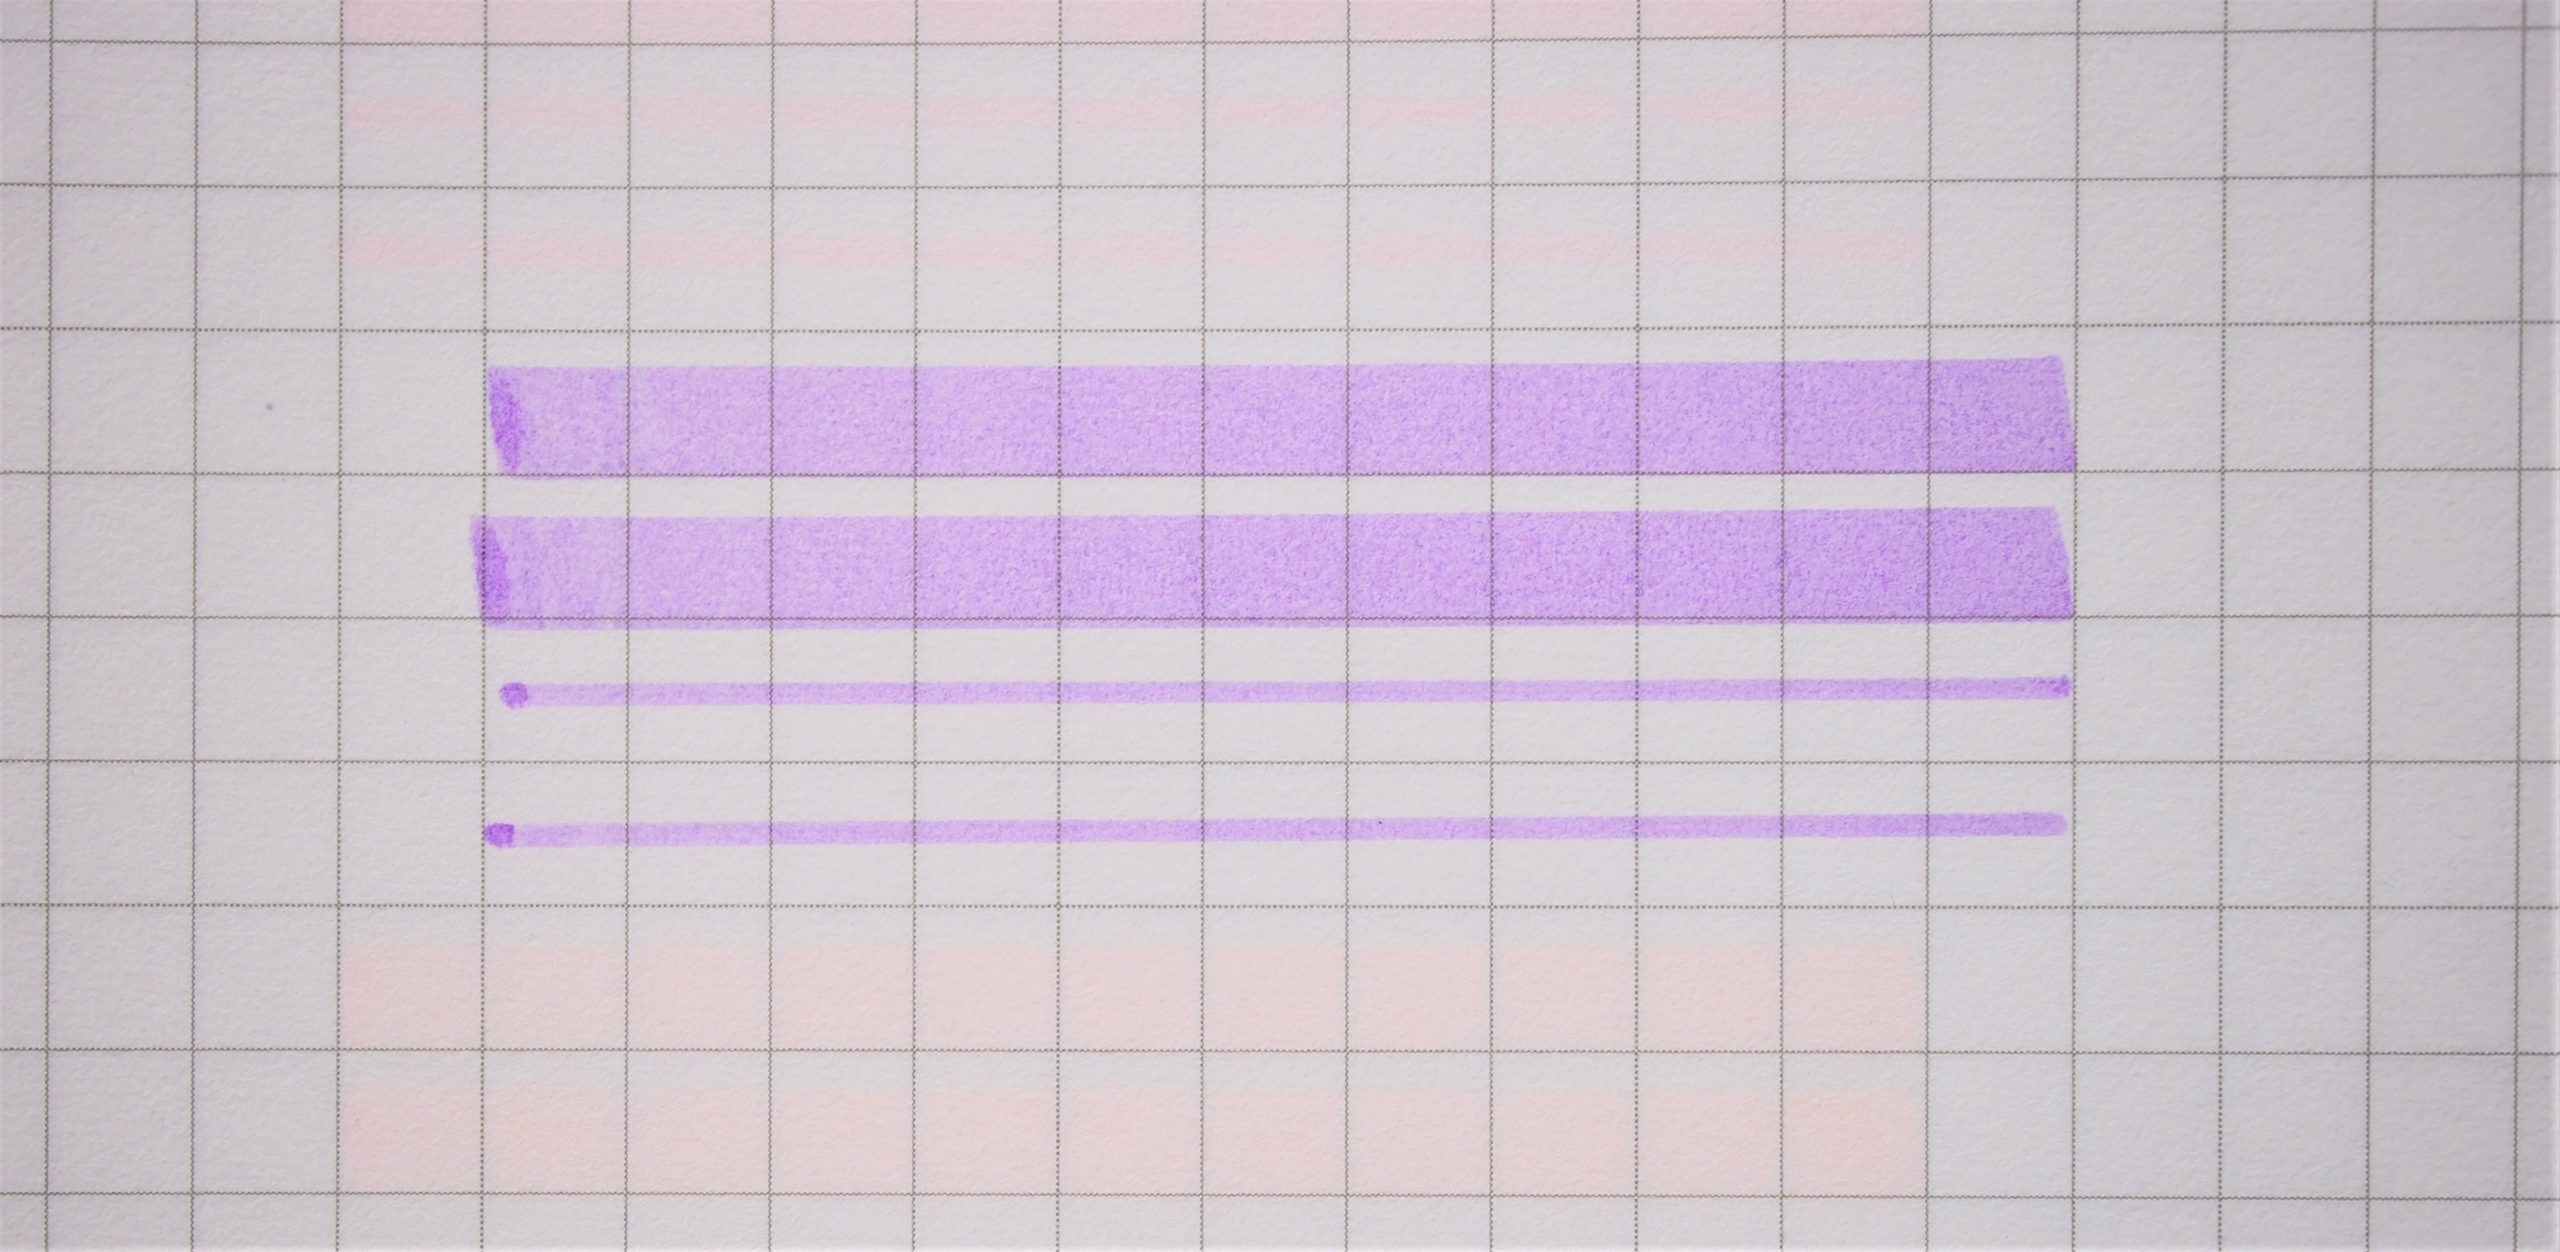 1本で太・細のシンプルな蛍光ペン「オプテックスケア」10色レビュー 